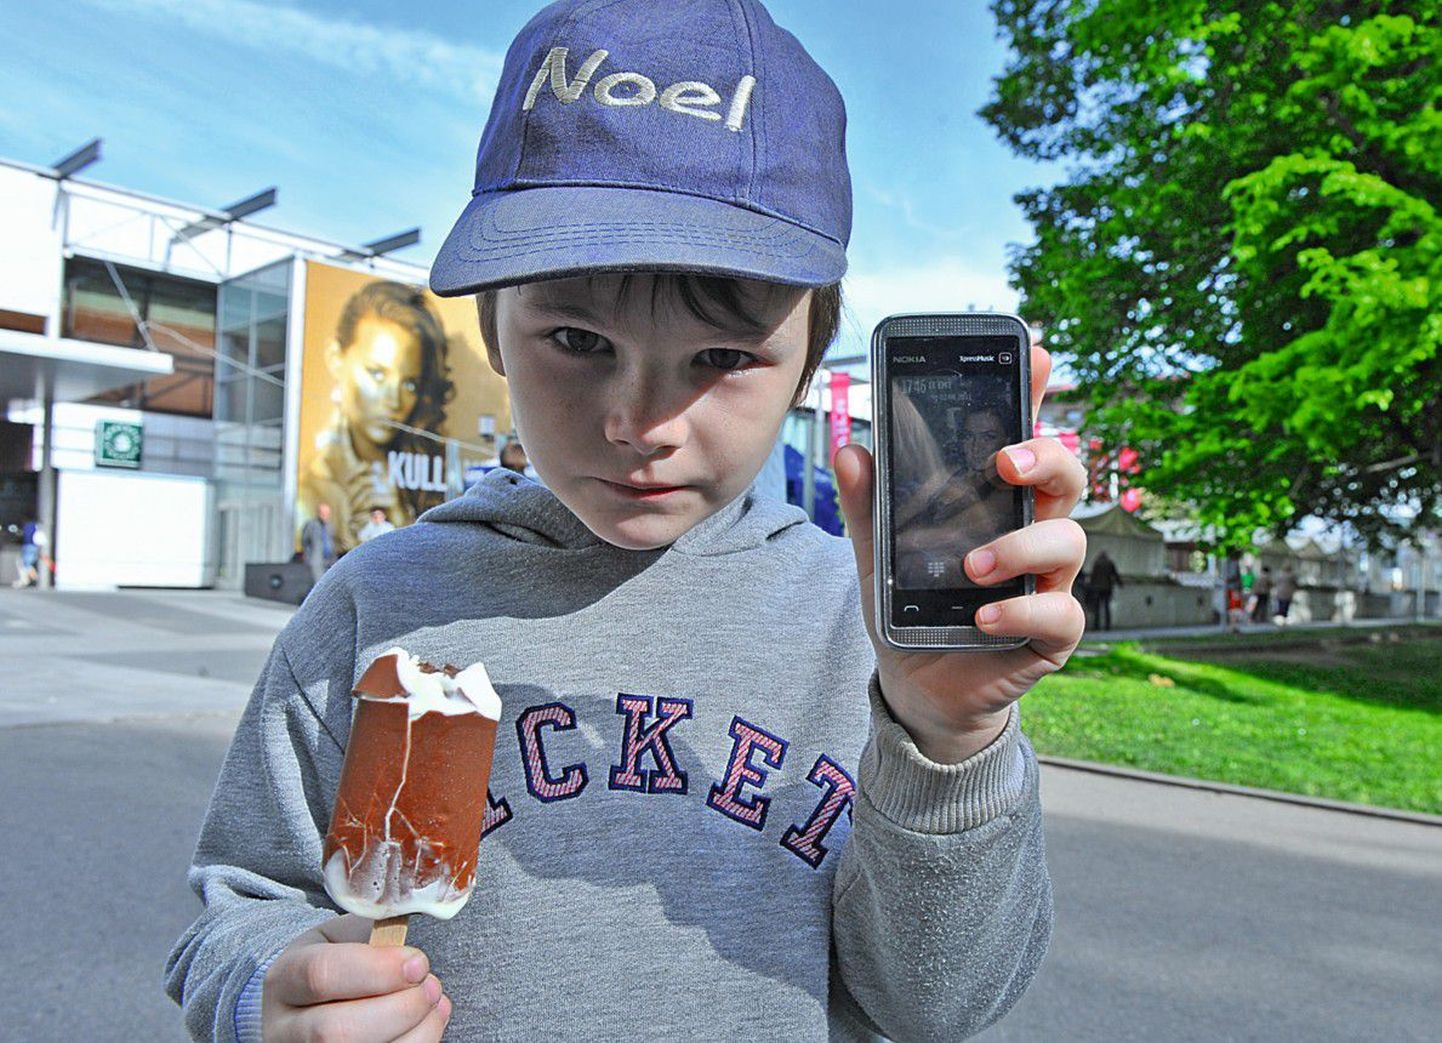 У маленького жителя Таллинна Ноэля есть свой собственный мобильный телефон. Его мама Юлия считает, что в Эстонии должны предоставлять больше информации об излучении мобильных телефонов.